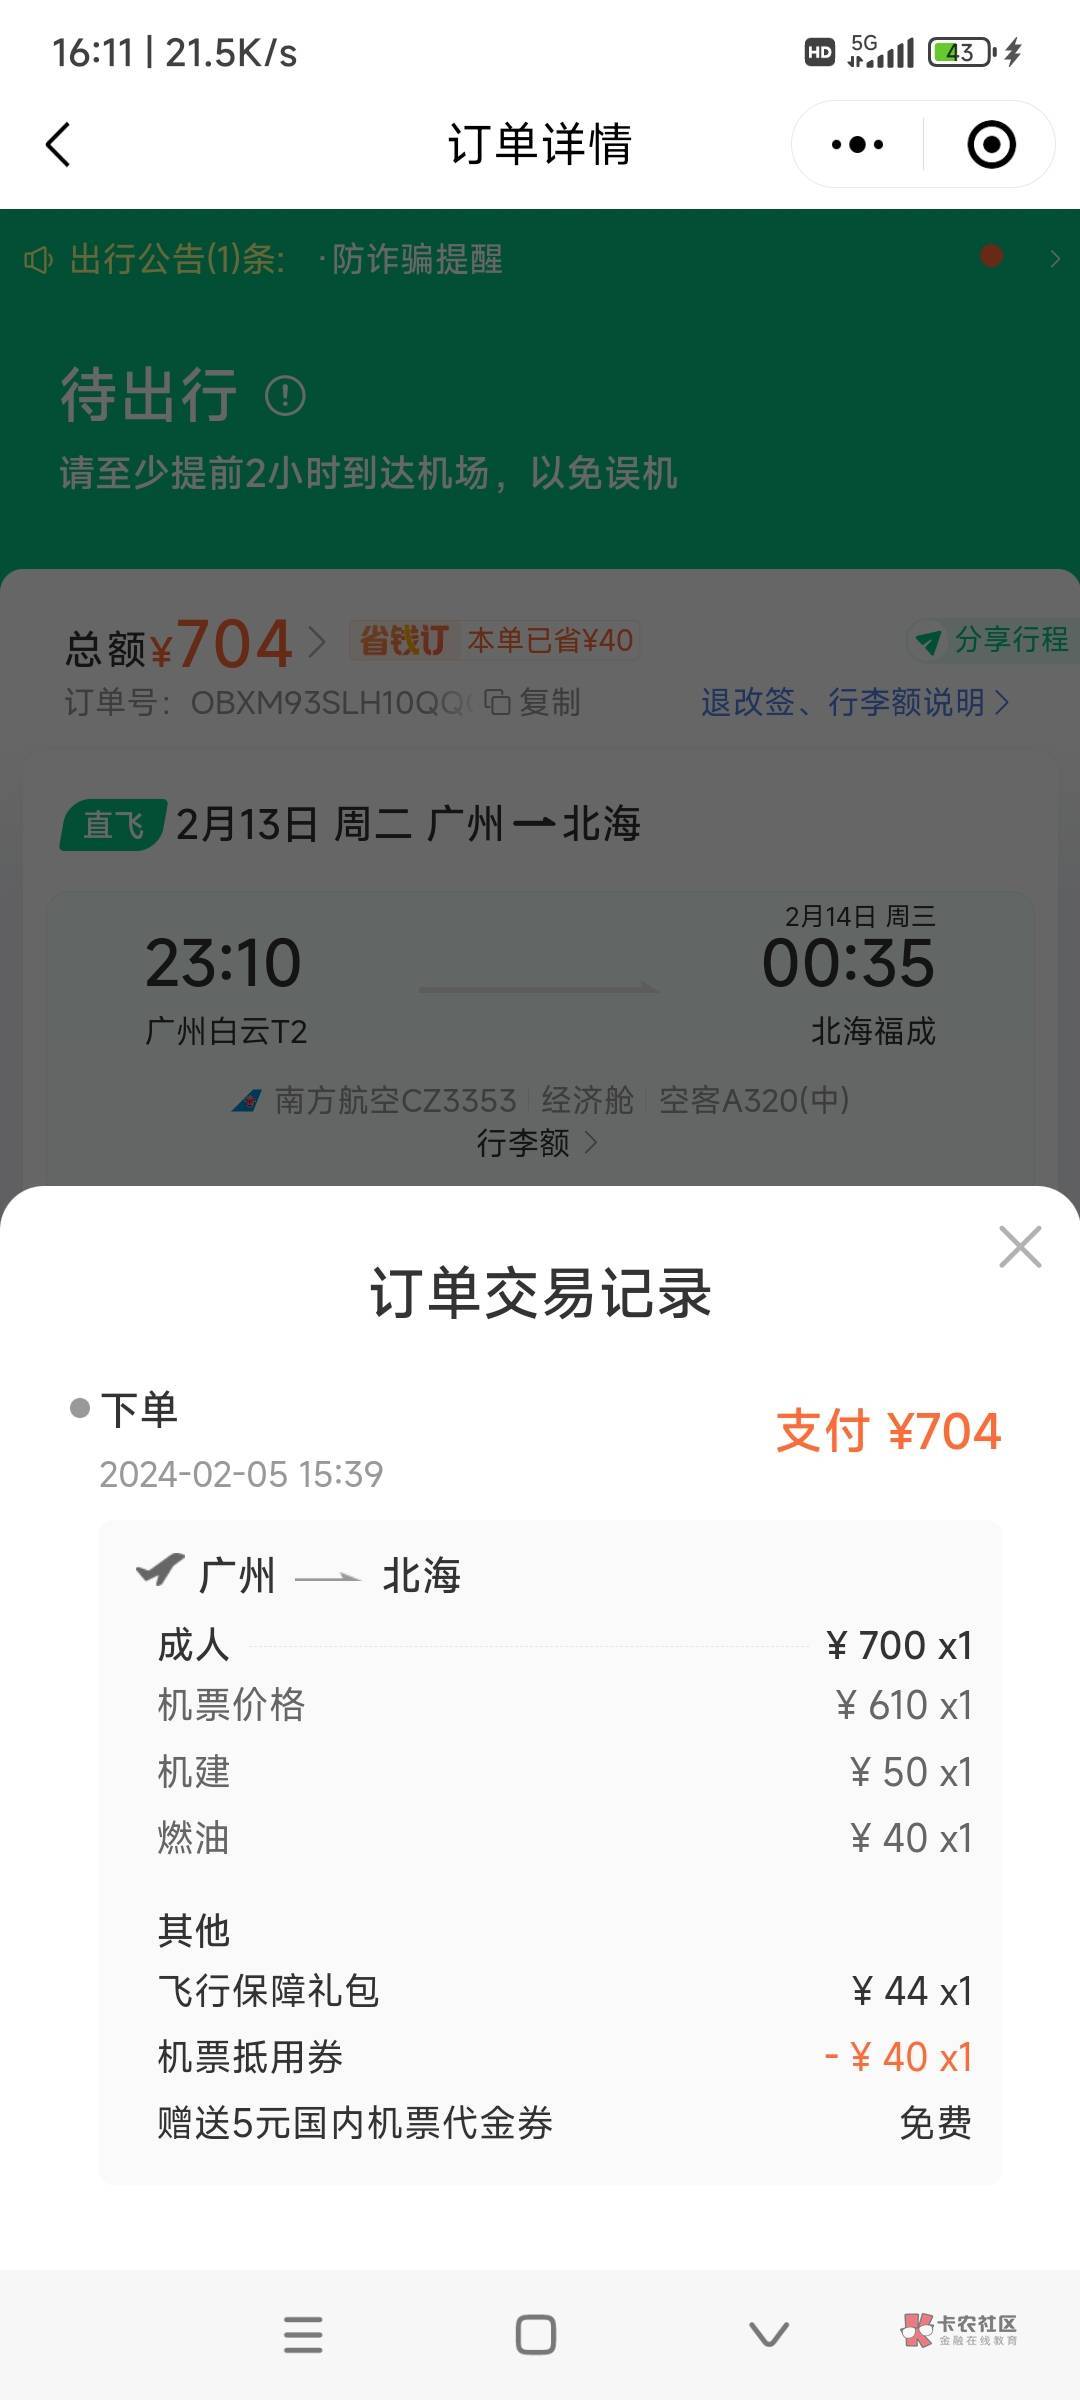 同程南航第4次毕业了129.37利润，买广州到北海机票700退款是780，用了同程40机票和宁48 / 作者:时日无多 / 